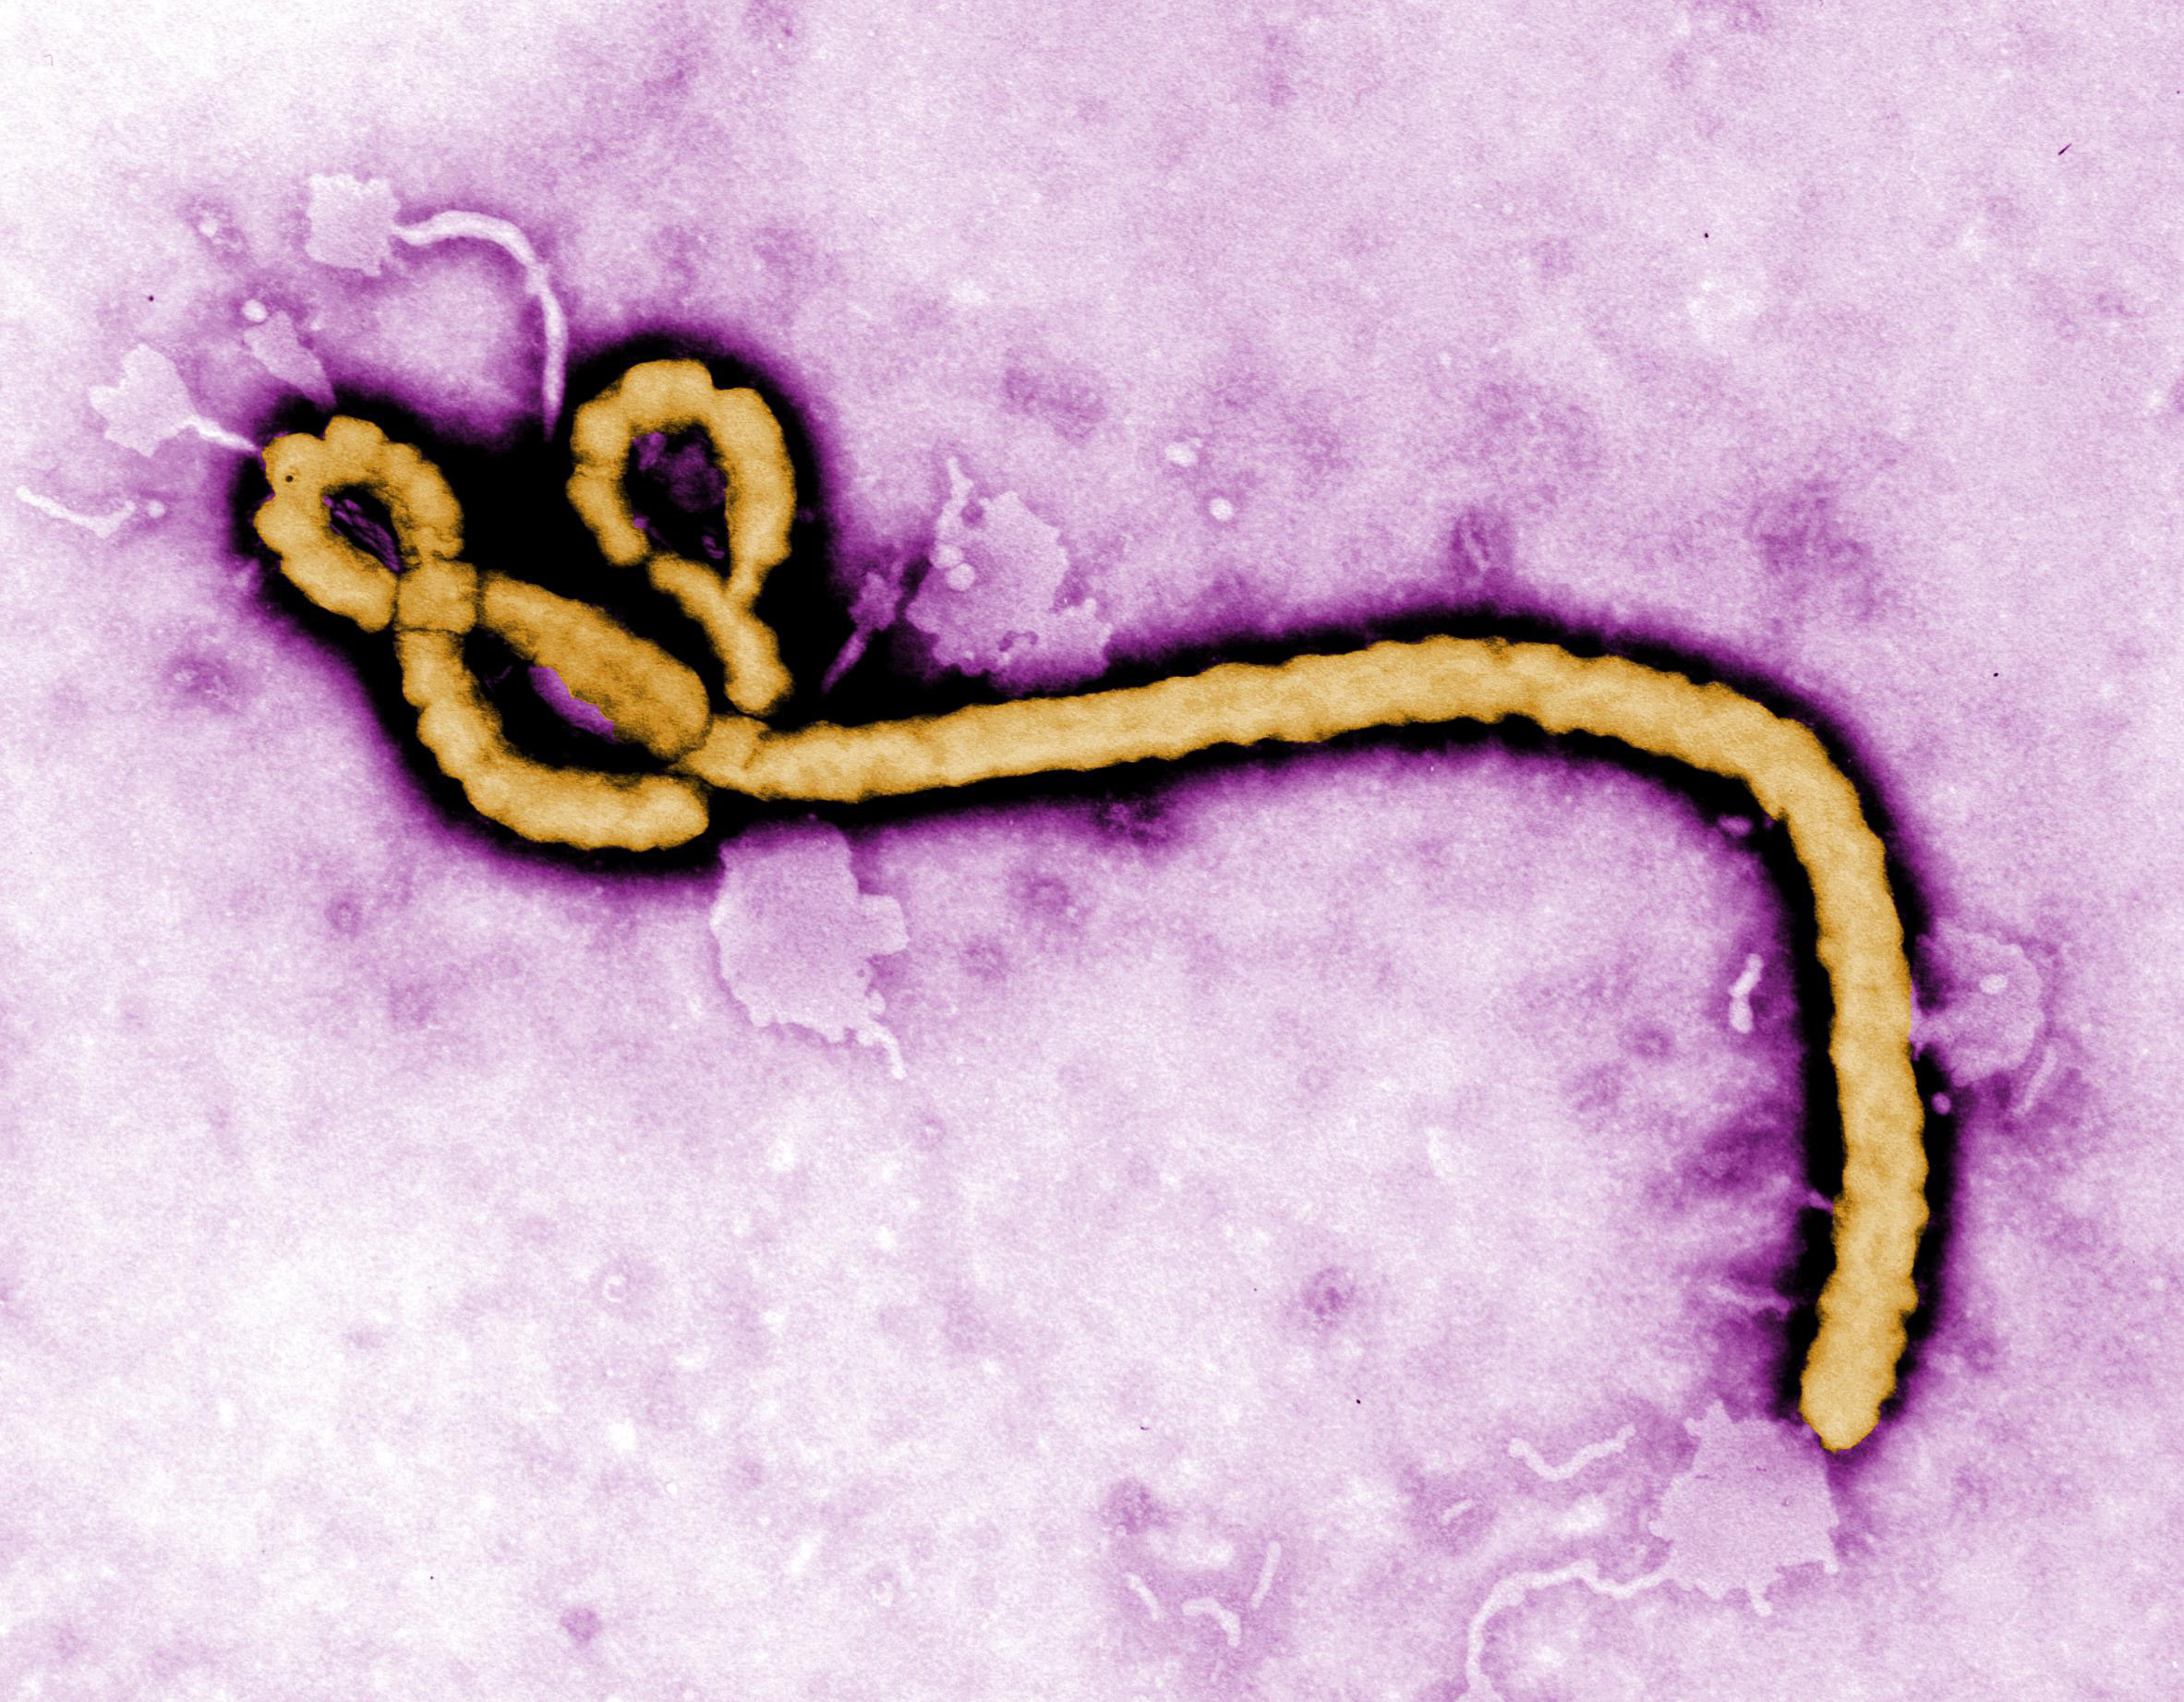 Le Virus Ebola